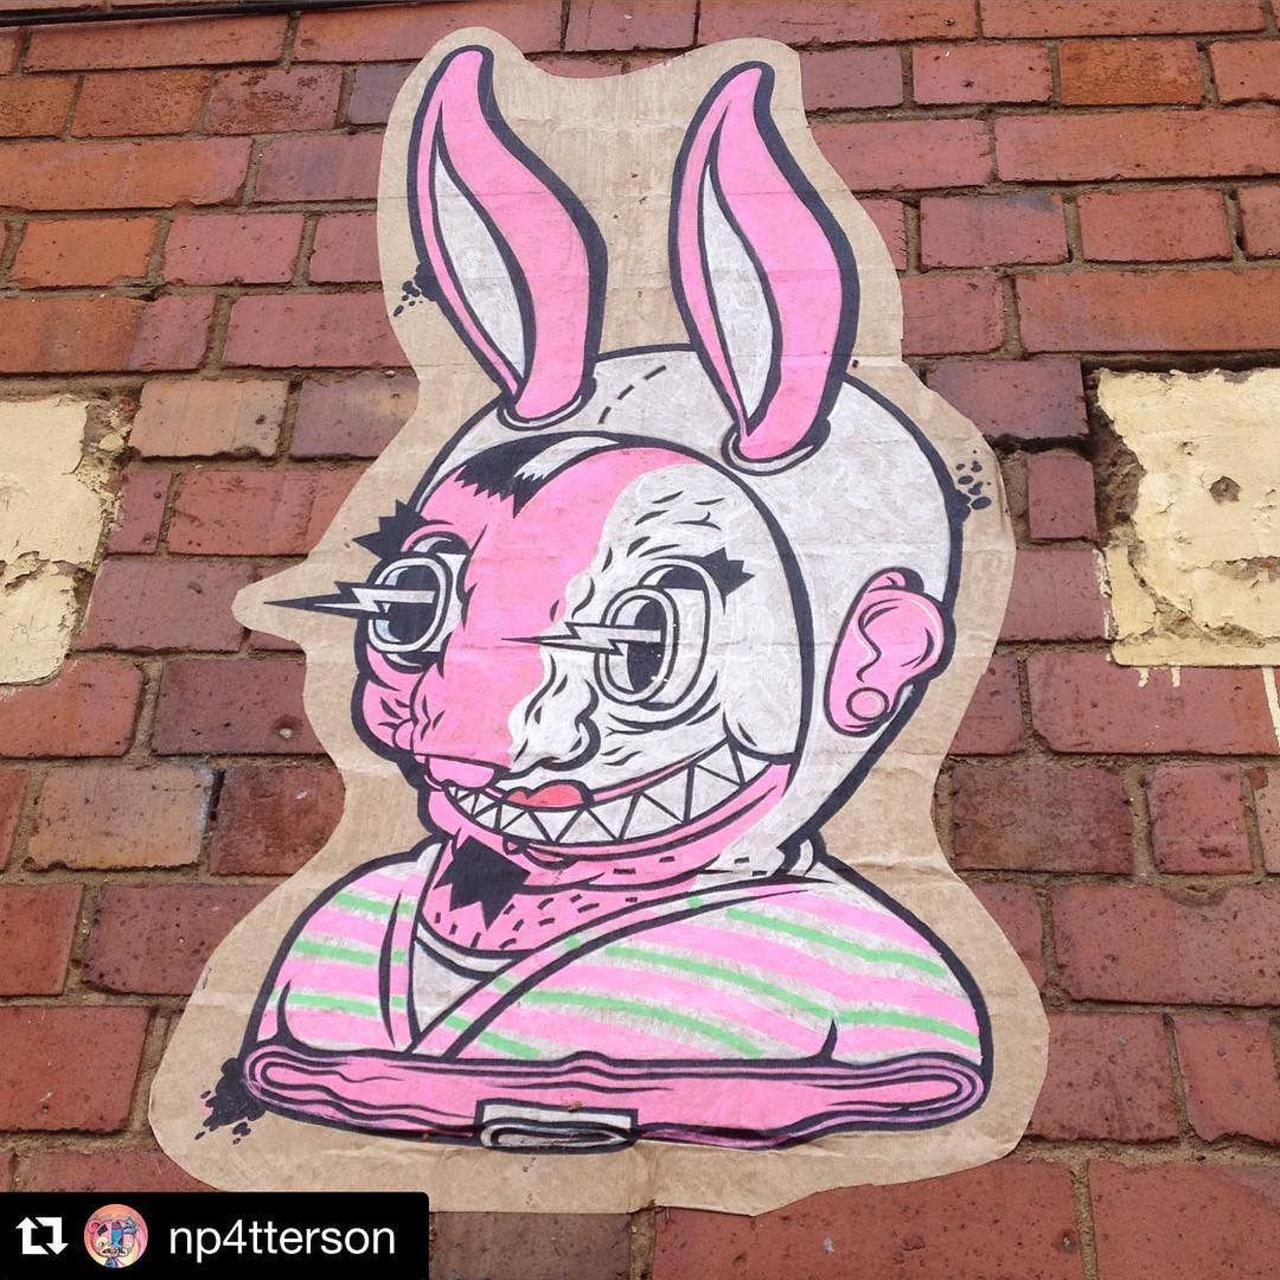 RT @GraffSpotting: #GraffSpotting #Instagram @setdebelleza #streetart #graffiti #digbeth @StreetArtBrum http://t.co/WVp0ajCiXj